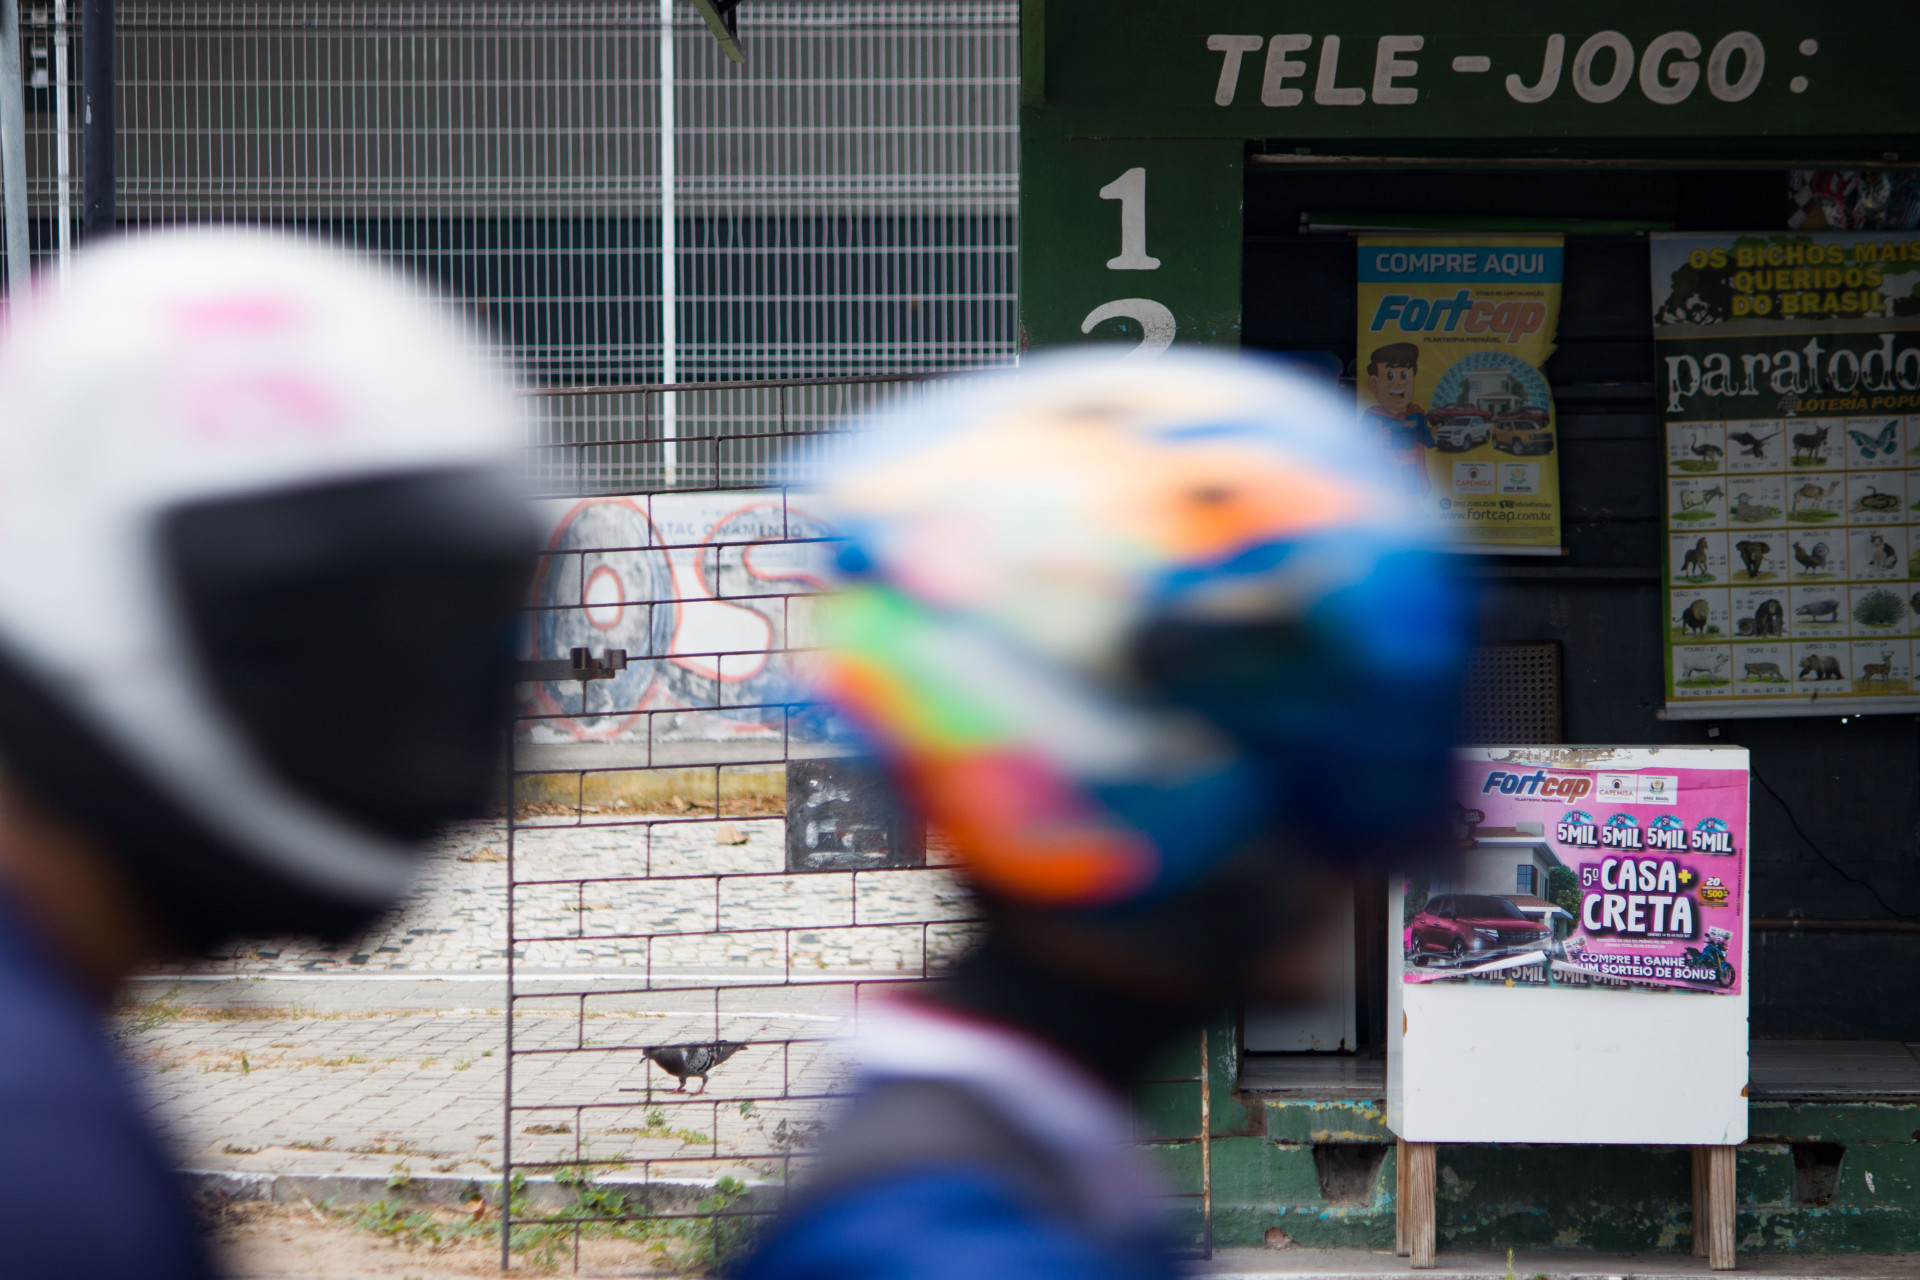 Jogo de Bicho: a lotaria popular mas ilegal do Brasil